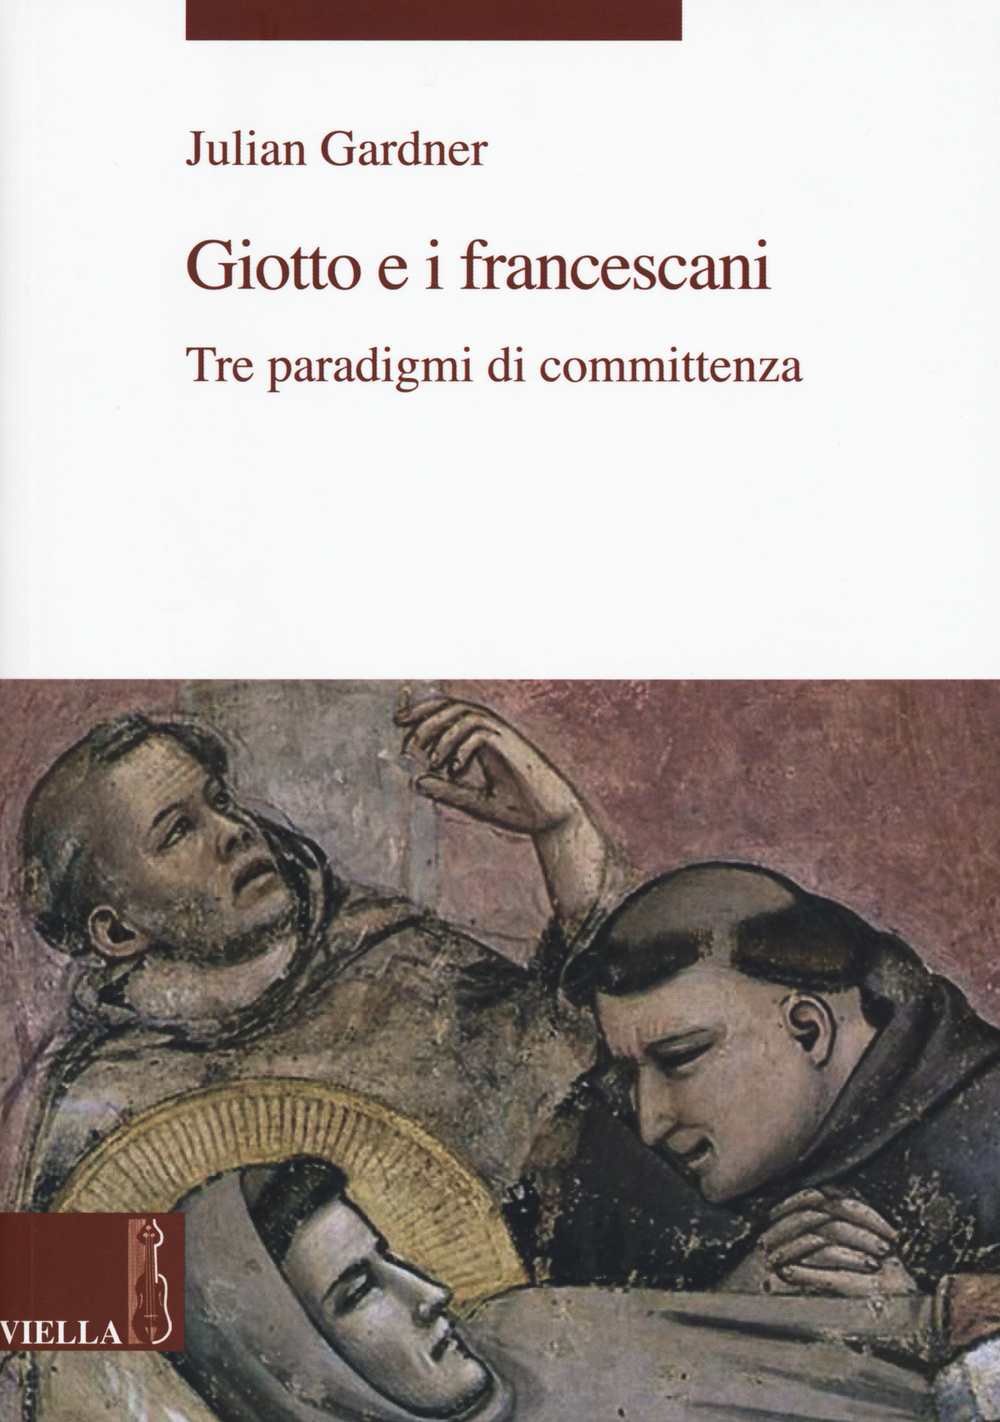 Libri Julian Gardner - Giotto E I Francescani. Tre Paradigmi Di Committenza NUOVO SIGILLATO, EDIZIONE DEL 29/10/2015 SUBITO DISPONIBILE